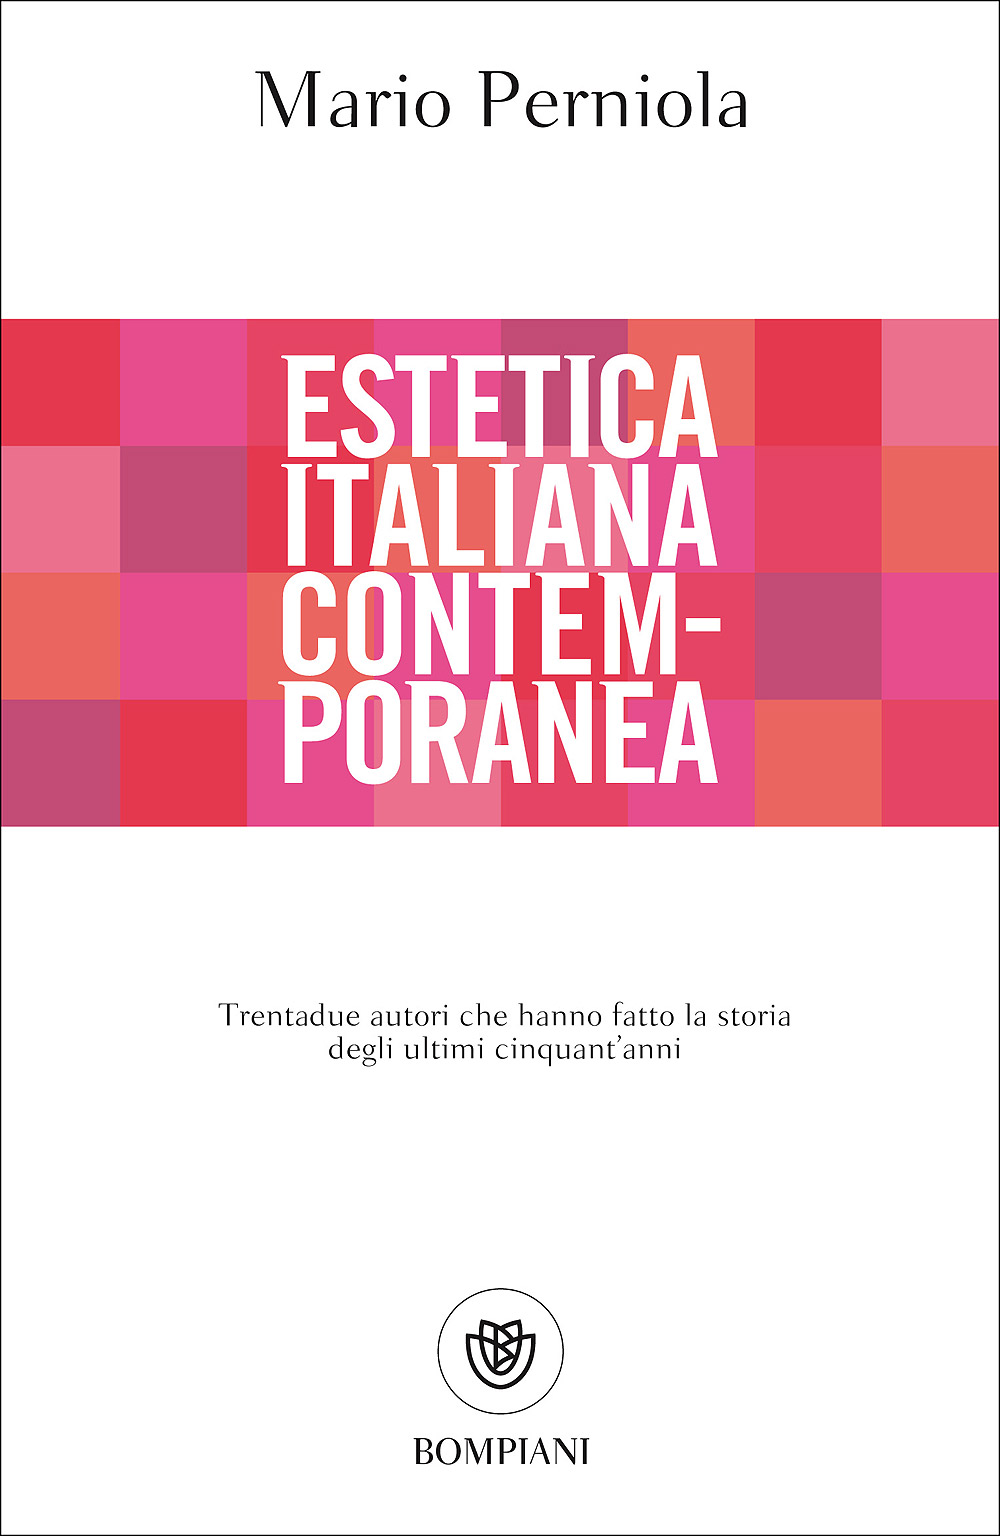 Copertina del volume di Mario Perniola Estetica Italiana Contemporanea (Bompiani 2017)